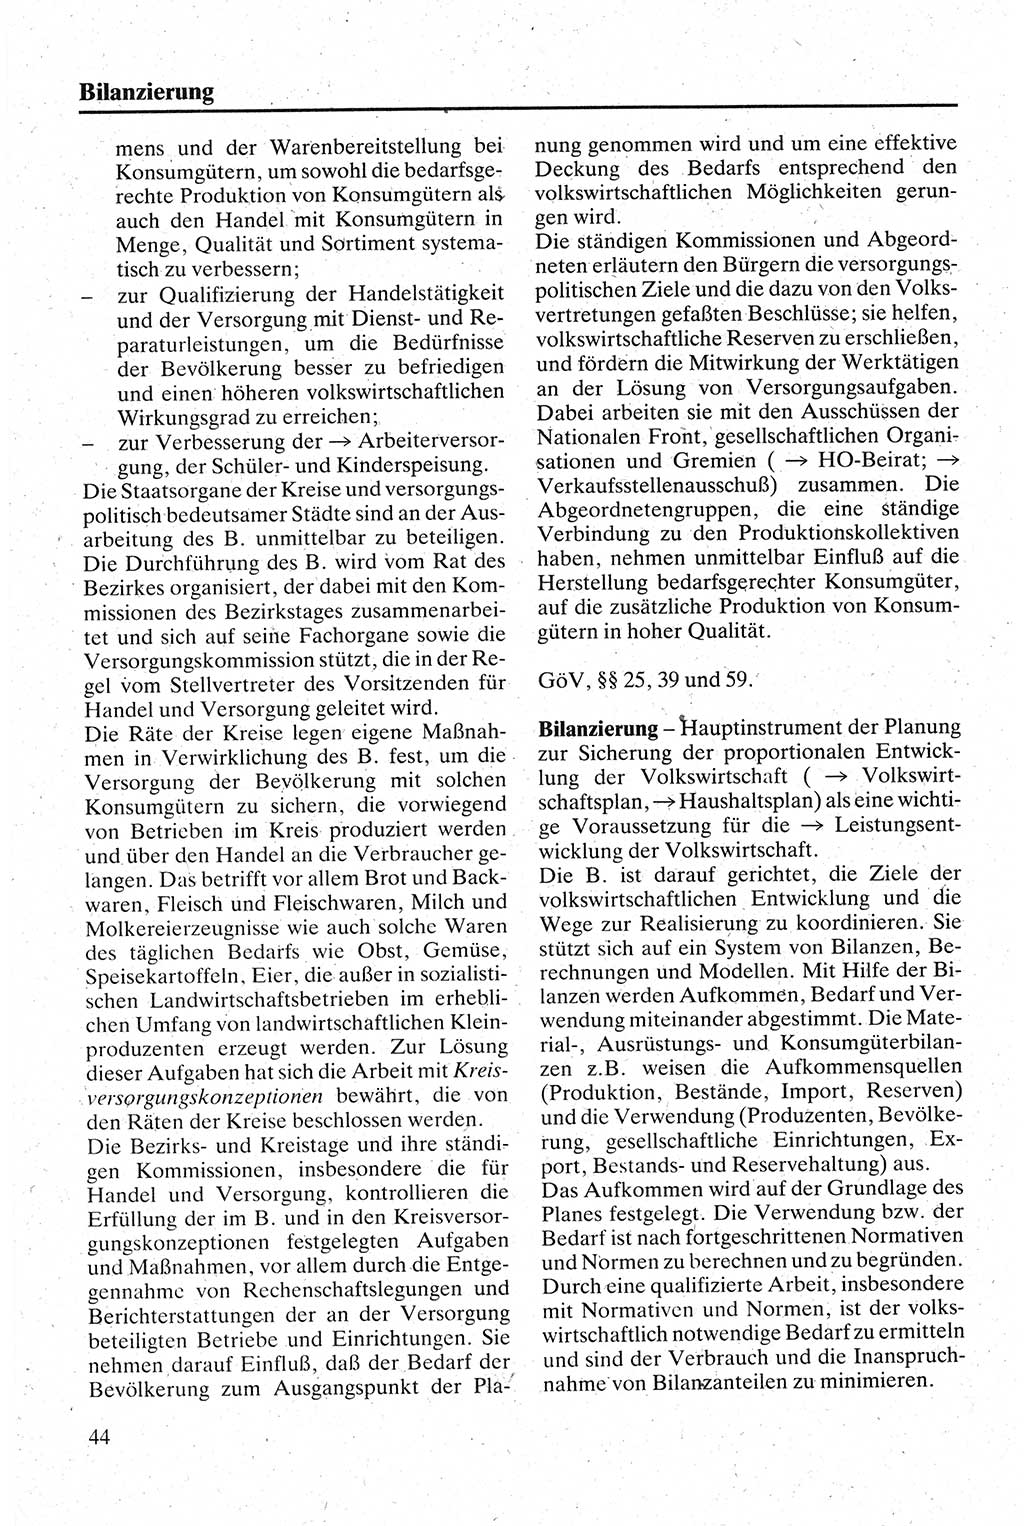 Handbuch für den Abgeordneten [Deutsche Demokratische Republik (DDR)] 1984, Seite 44 (Hb. Abg. DDR 1984, S. 44)